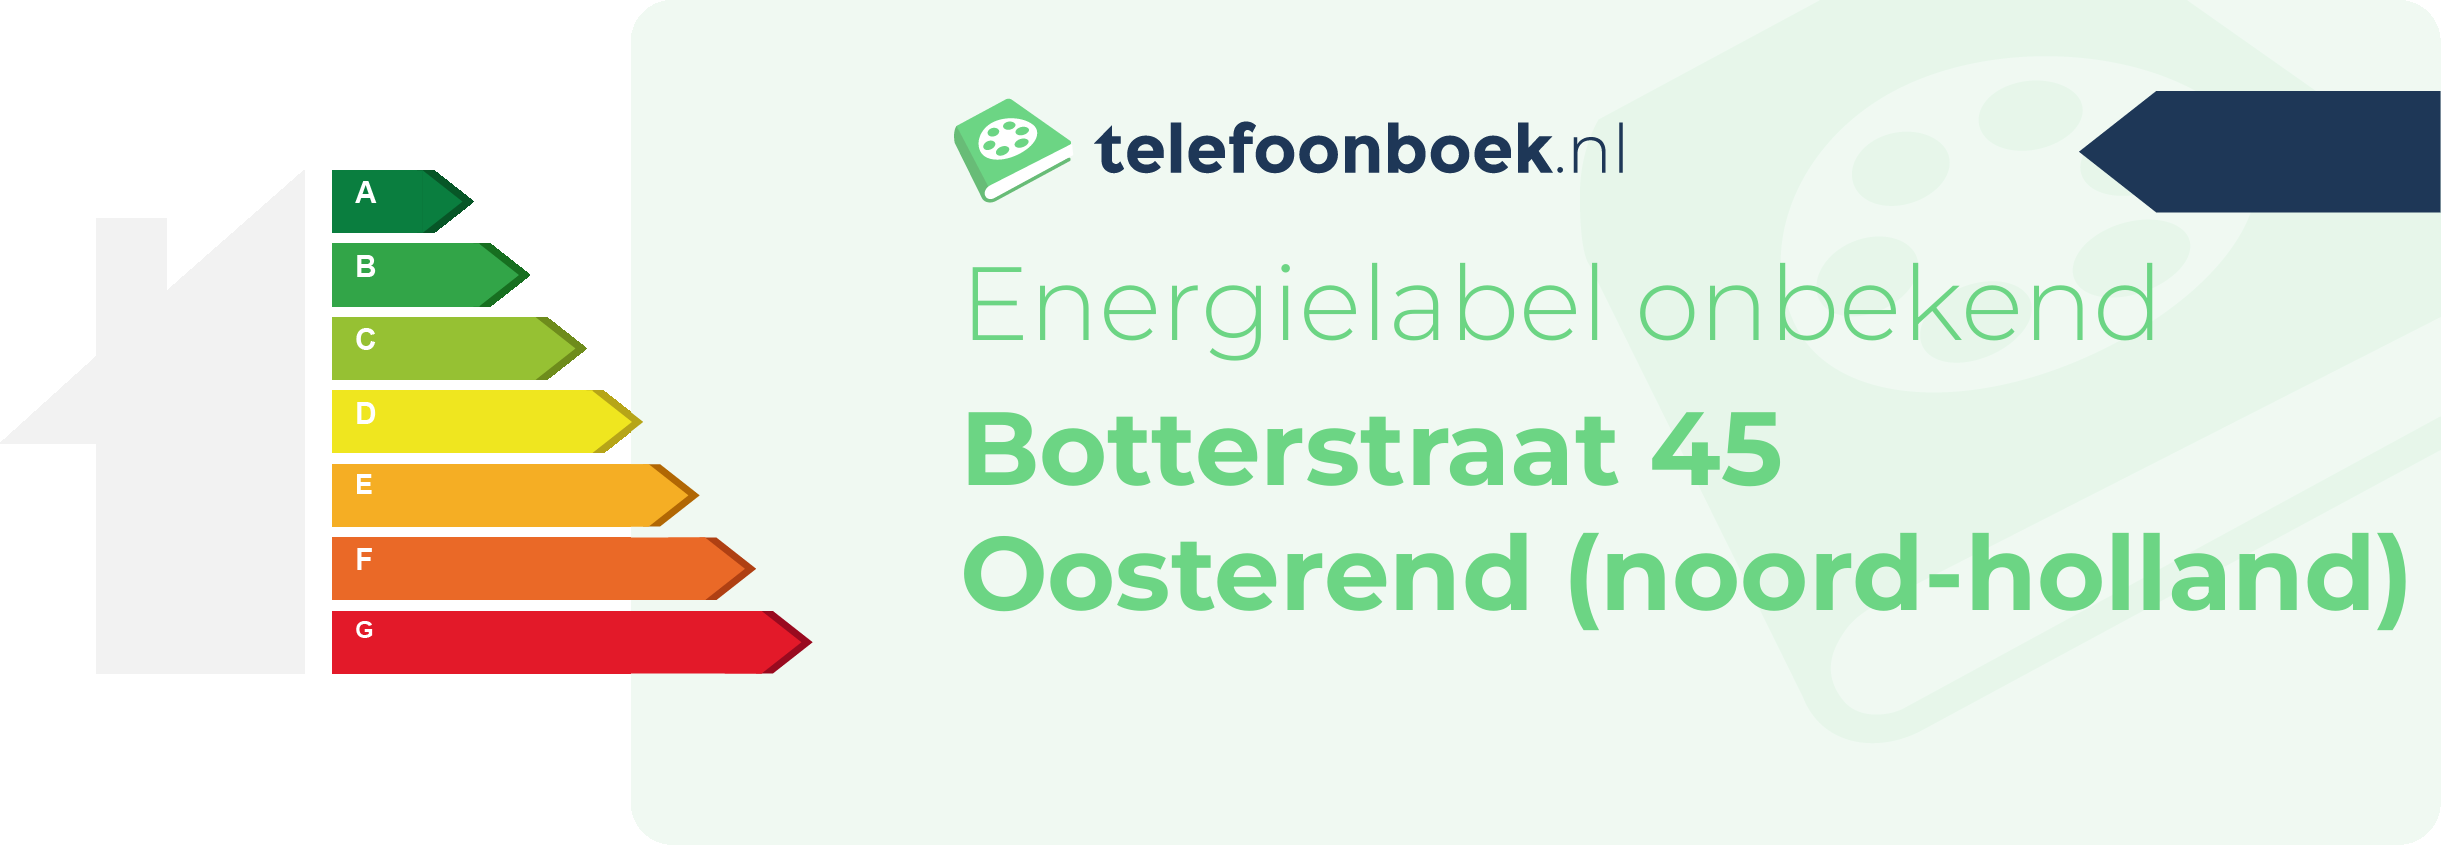 Energielabel Botterstraat 45 Oosterend (Noord-Holland)